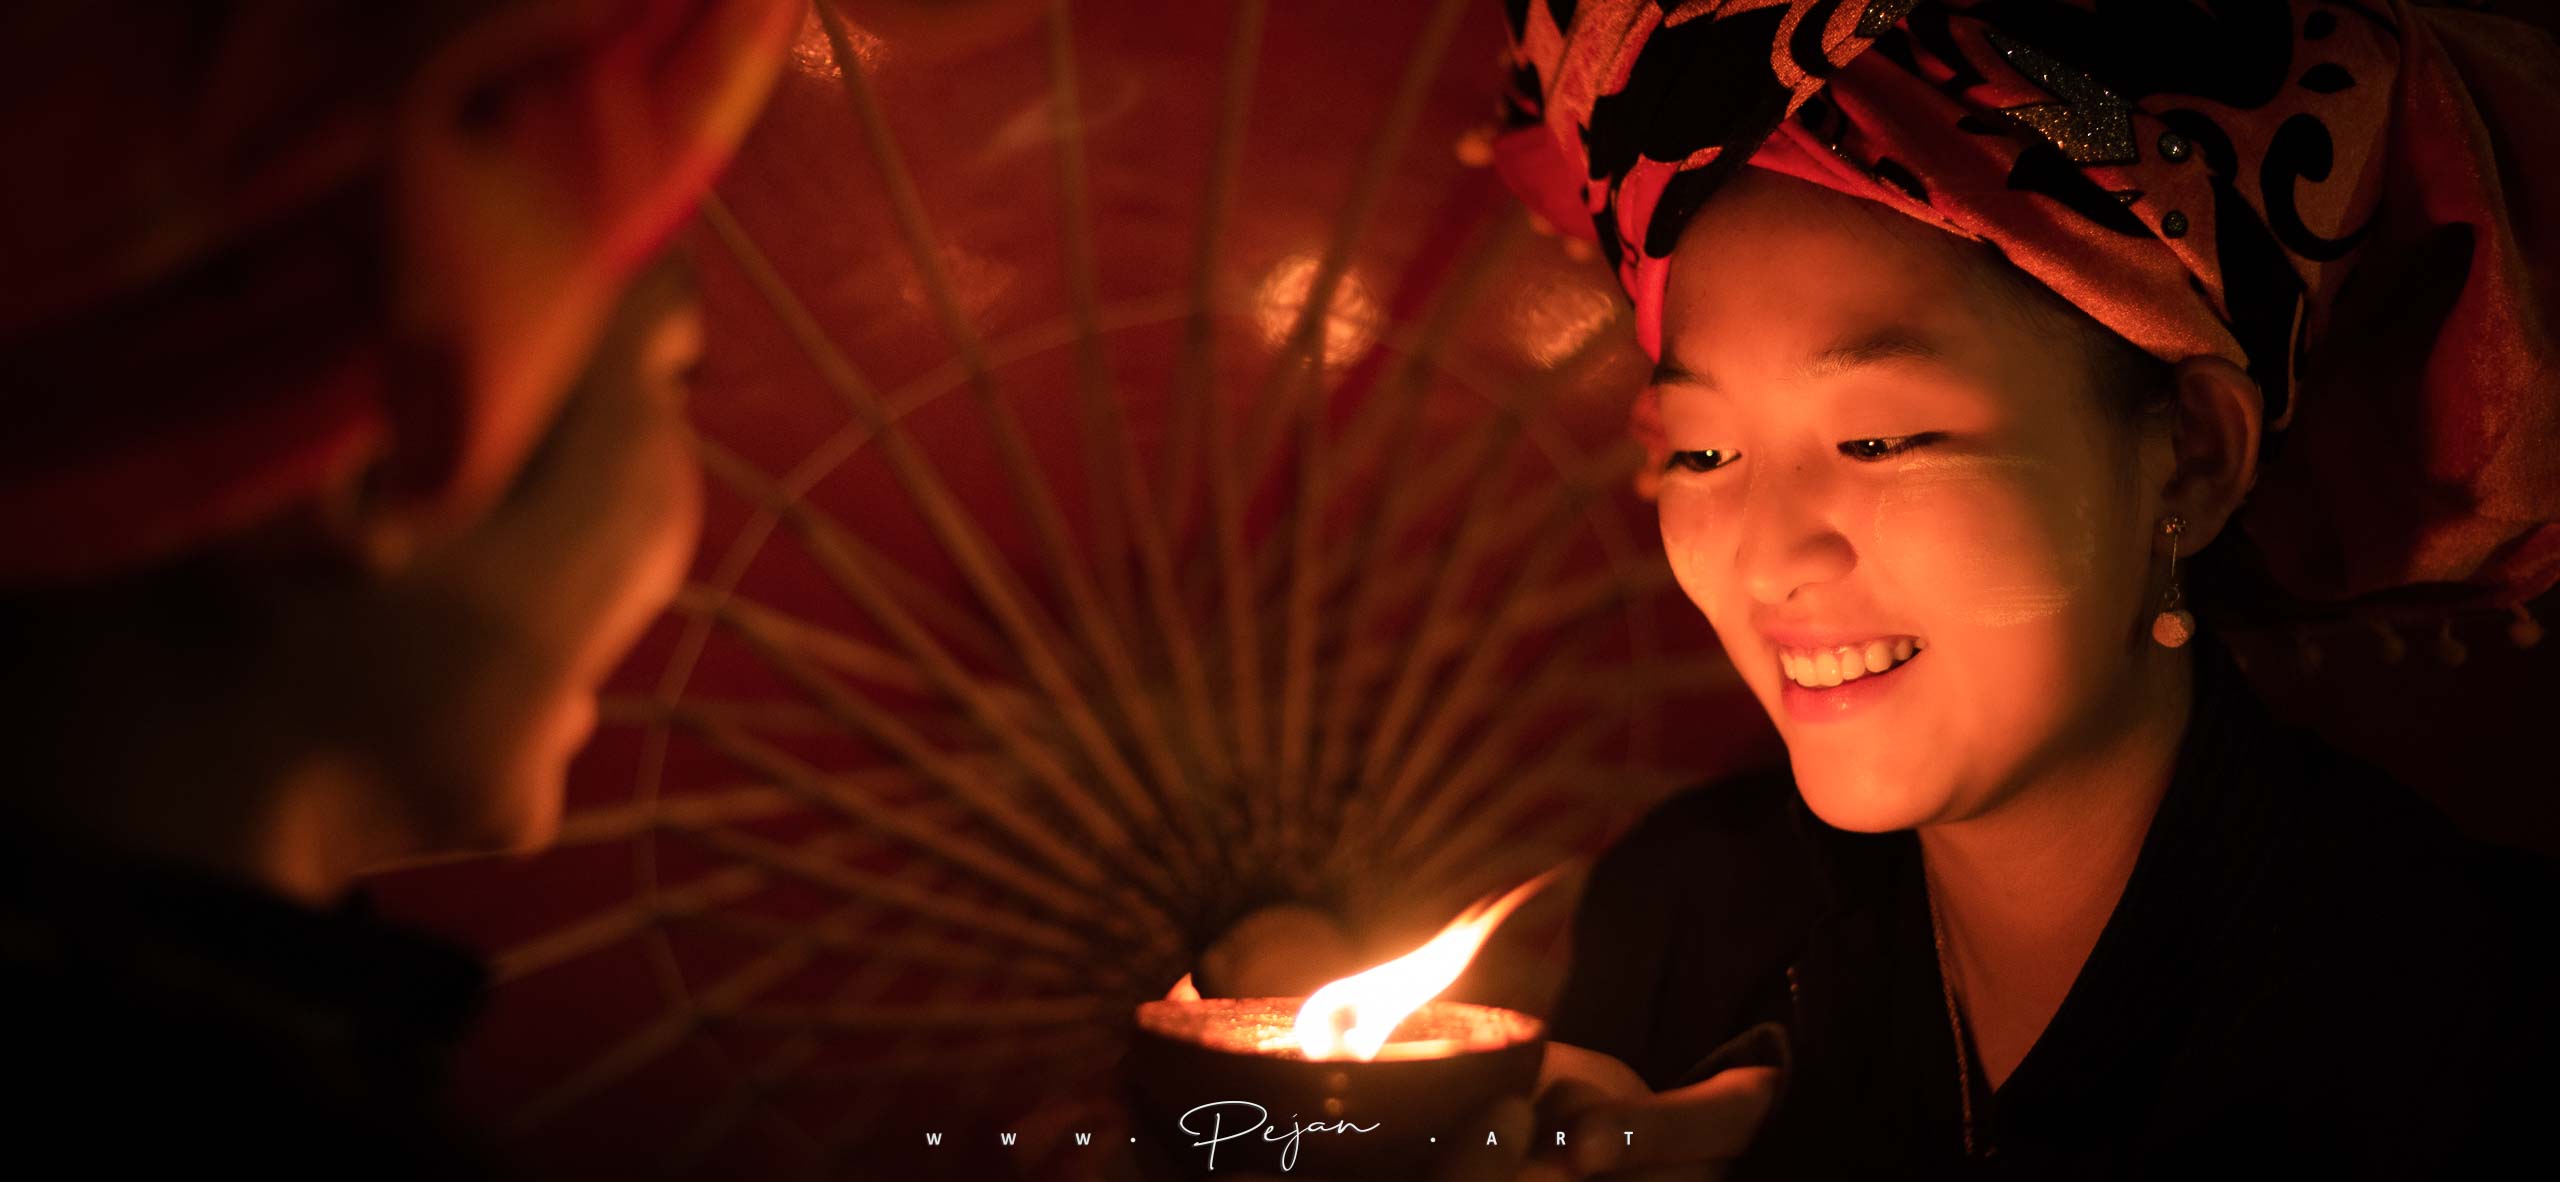 Portrait de nuit d'une jeune femme de l'ethnie Pao qui regarde en souriant les flamme d'une bougie devant une ombrelle. Elle porte du tanaka et une écharpe traditionnelle rouge de son ethnie. Lac Inle, Birmanie.